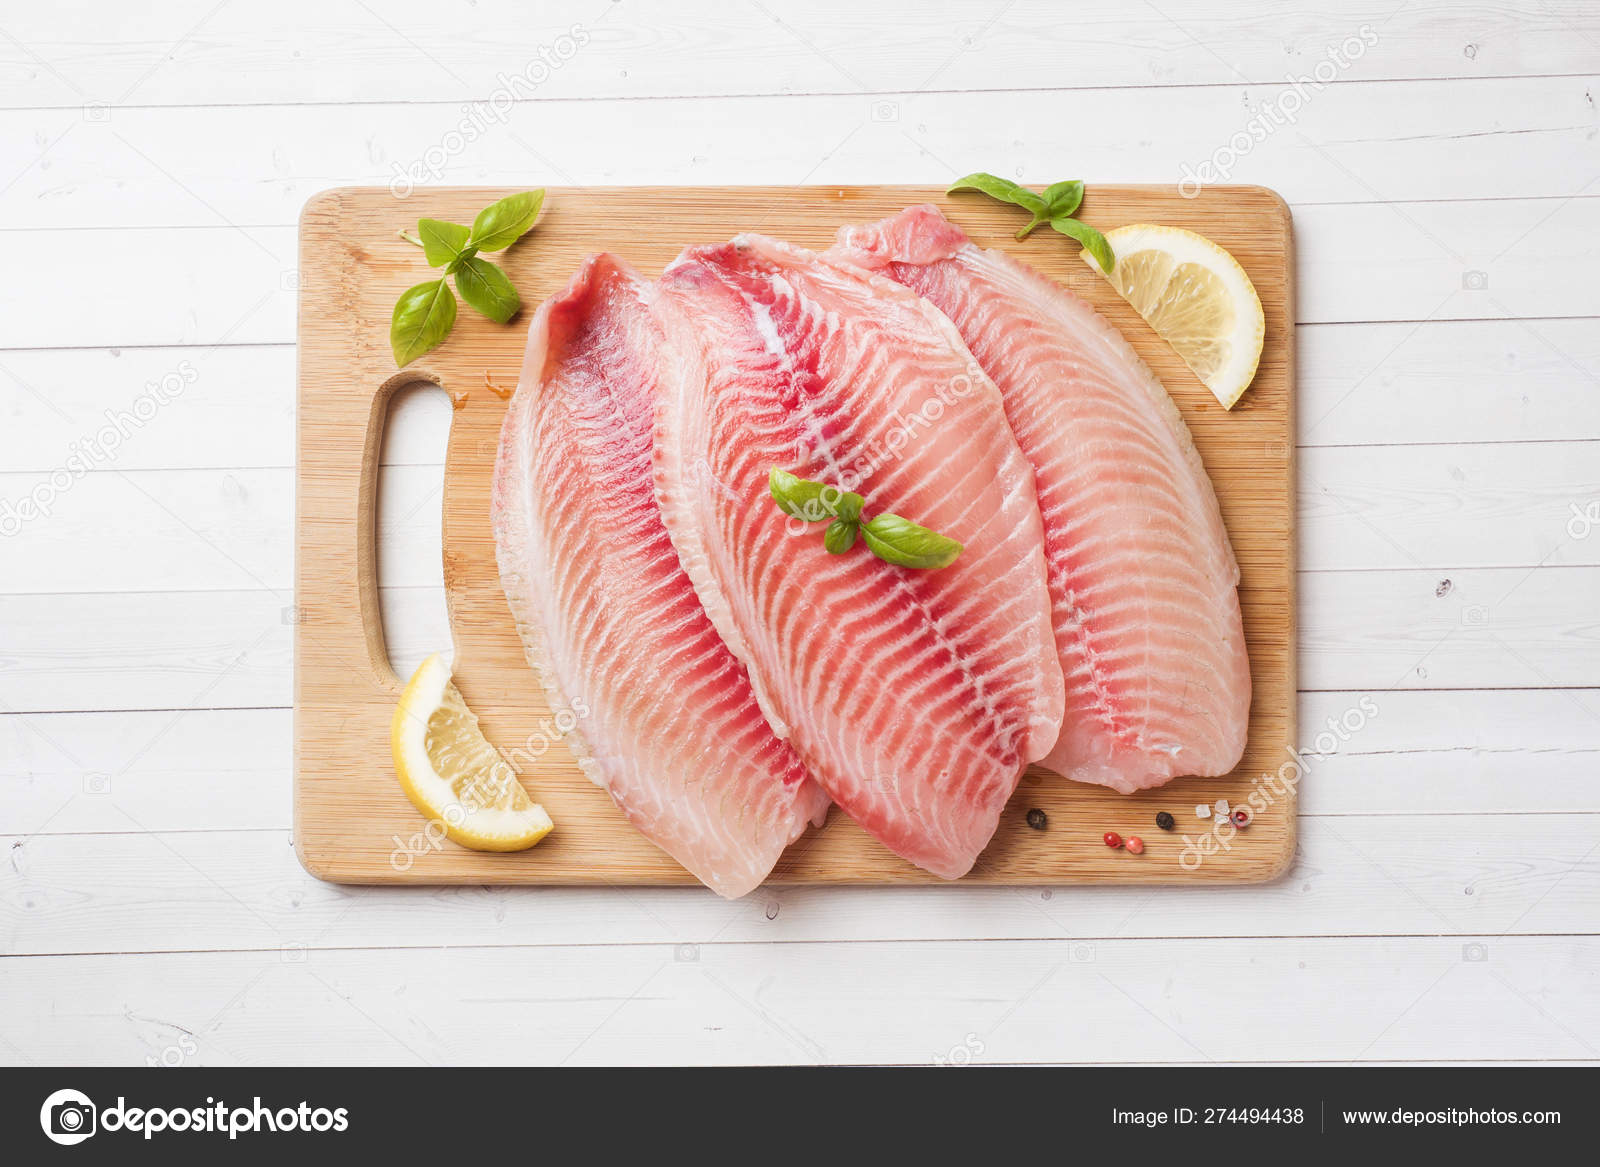 https://st4.depositphotos.com/3898687/27449/i/1600/depositphotos_274494438-stock-photo-raw-fish-fillet-of-tilapia.jpg